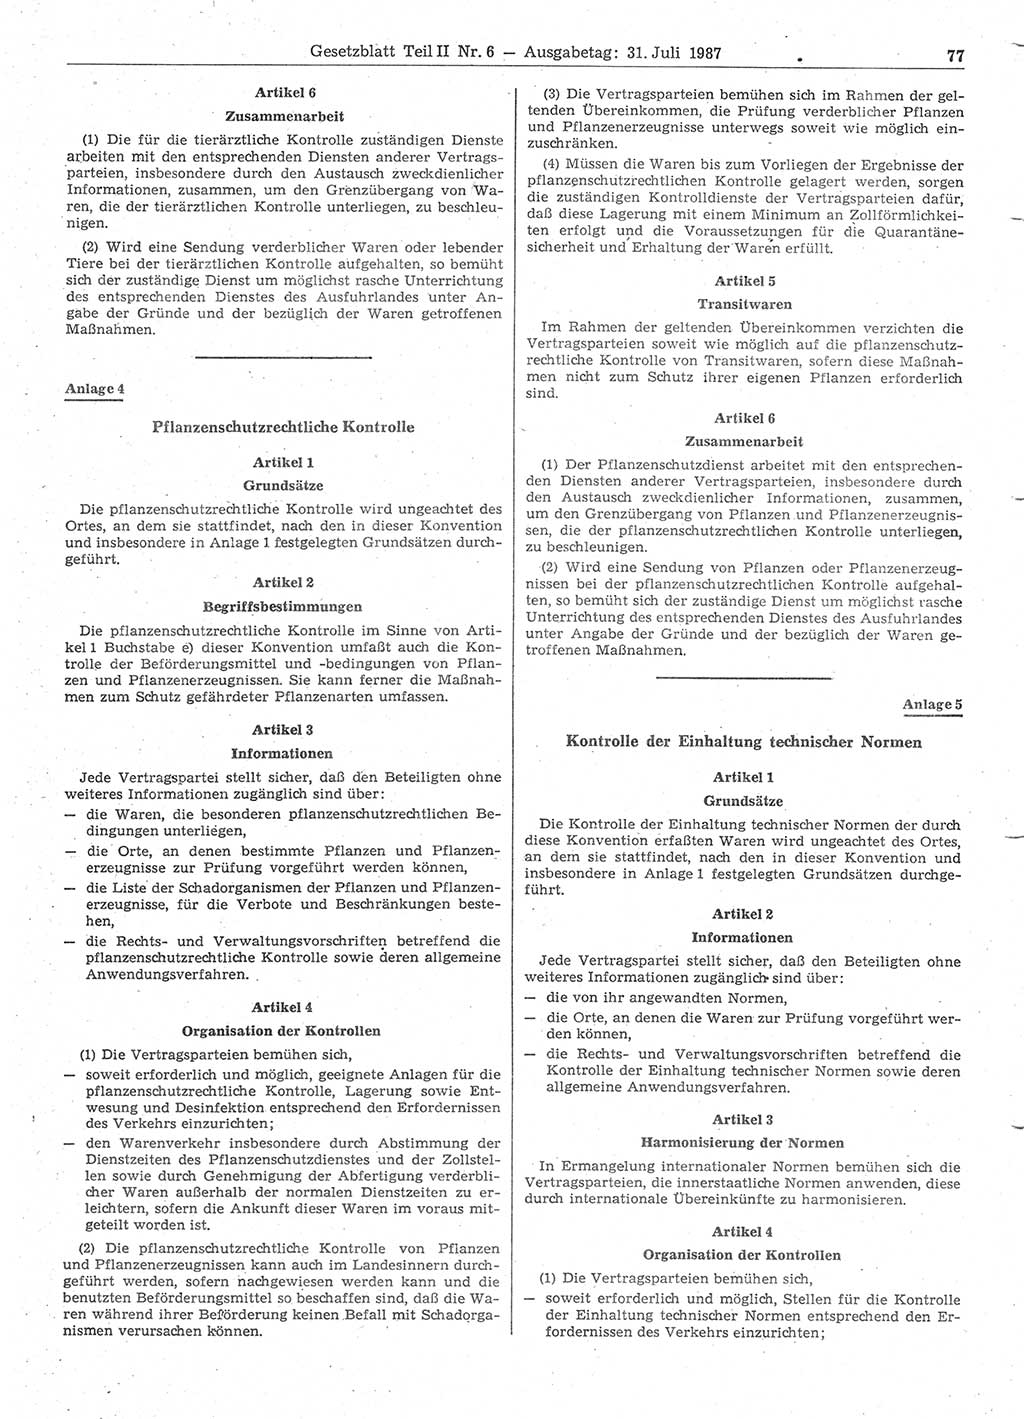 Gesetzblatt (GBl.) der Deutschen Demokratischen Republik (DDR) Teil ⅠⅠ 1987, Seite 77 (GBl. DDR ⅠⅠ 1987, S. 77)